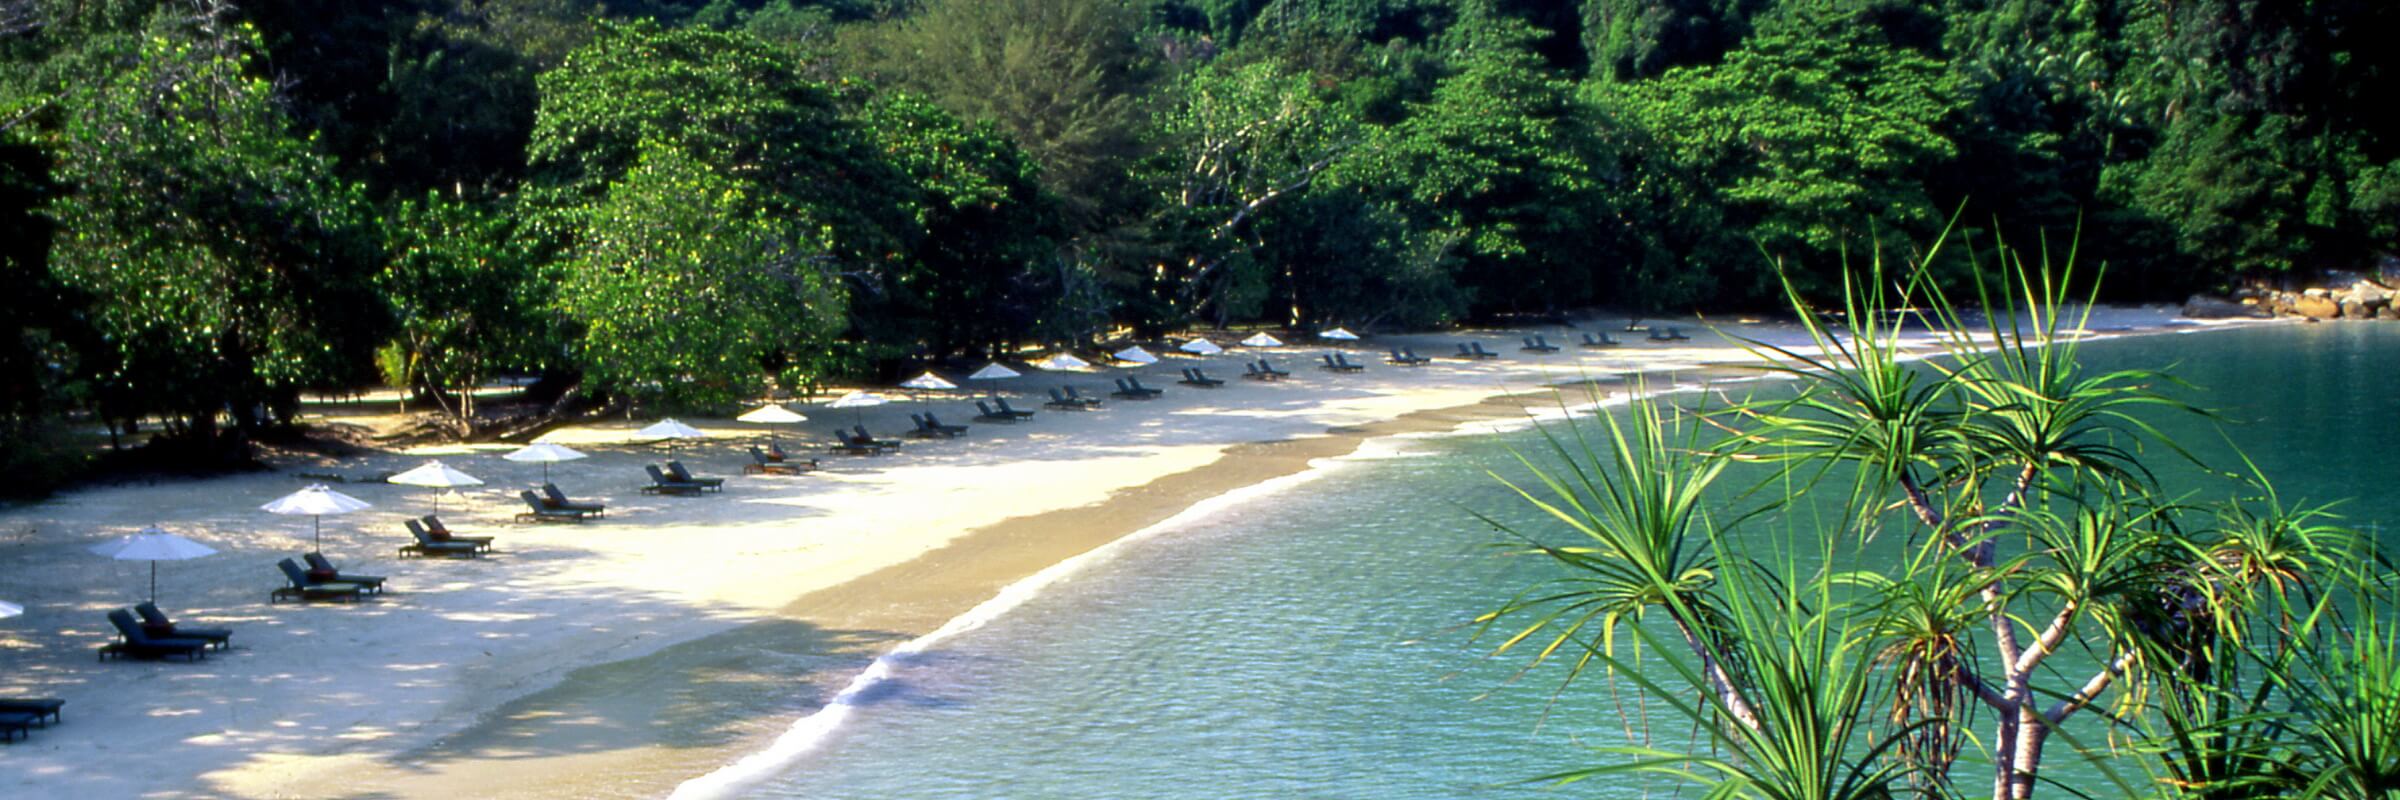 Das  Pangkor Laut Resort ist an der malerische Emerald Bay gelegen.